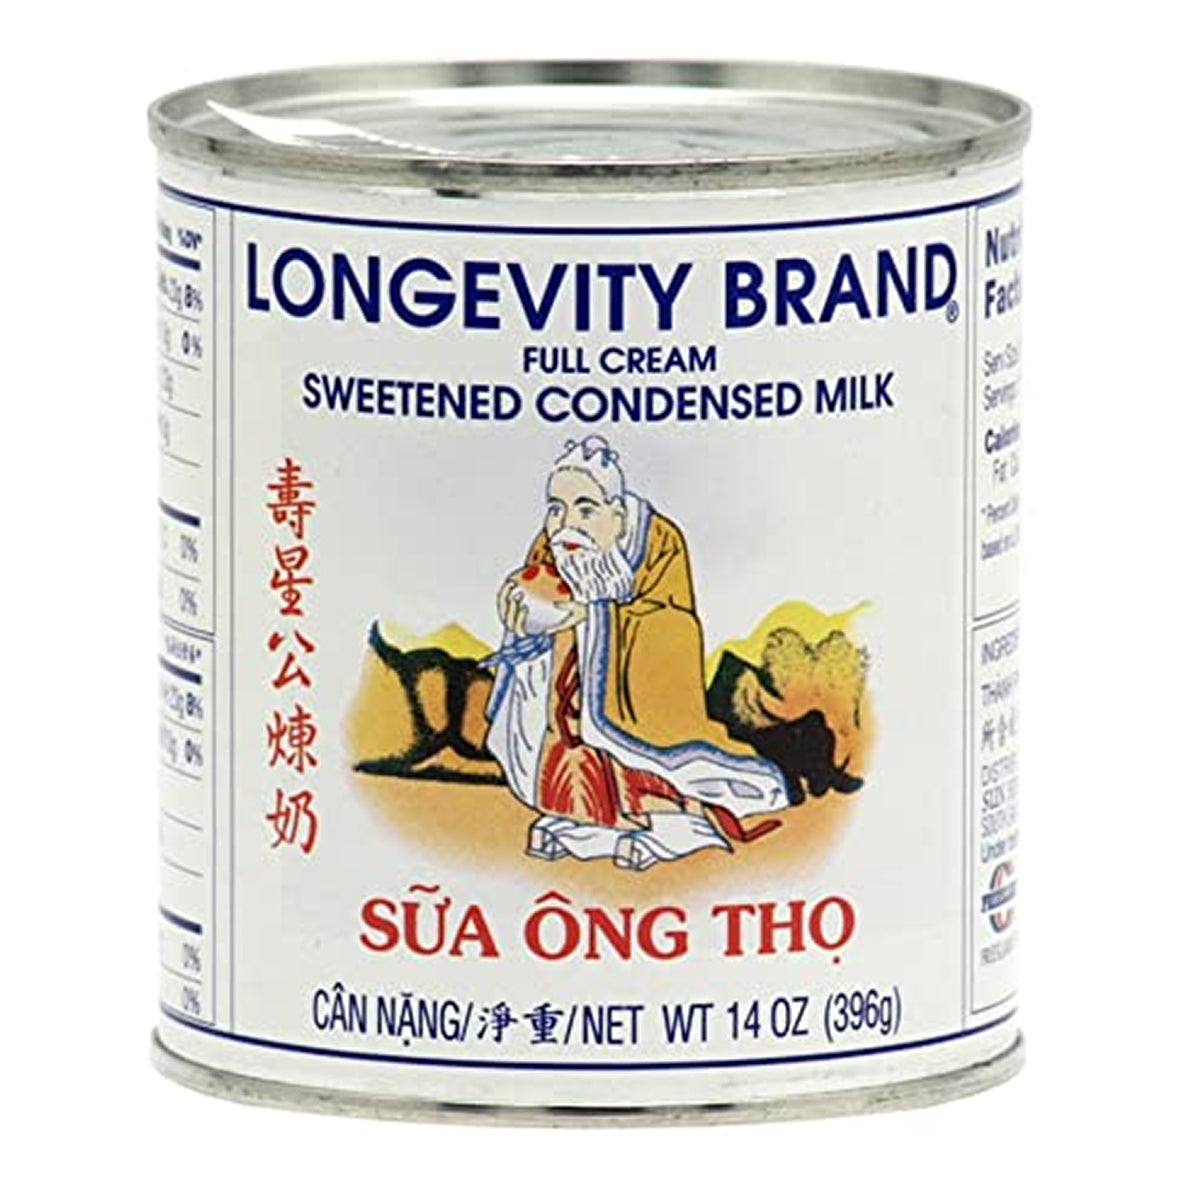 longevity brand sweetened condensed milk - 14oz